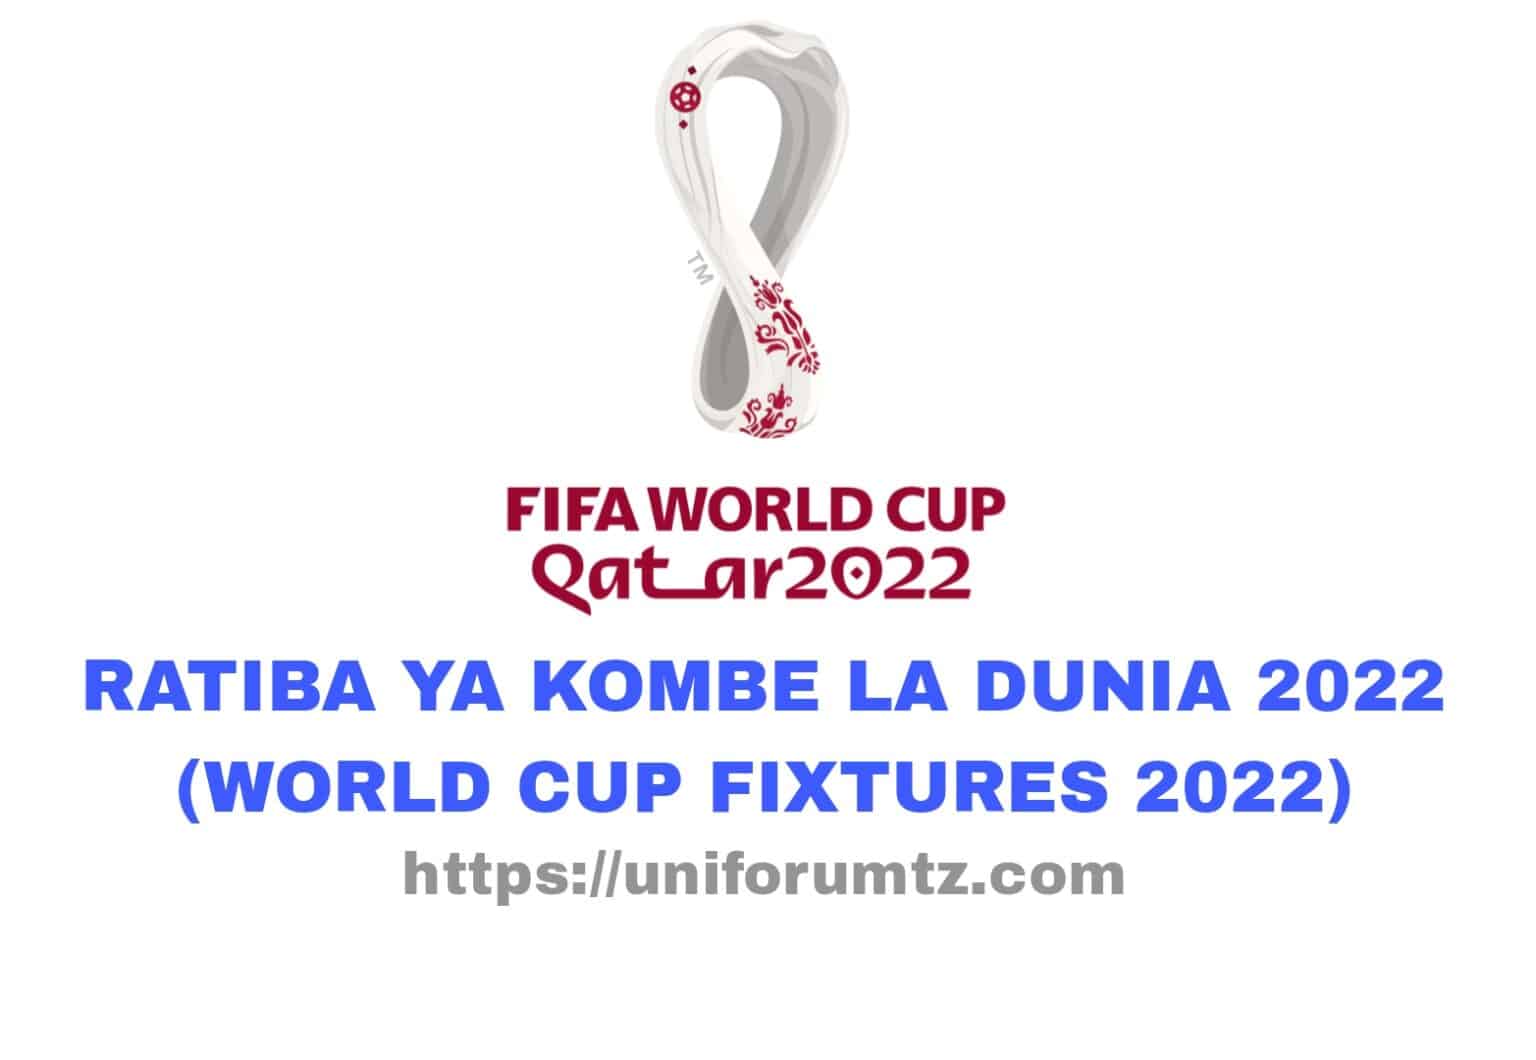 Ratiba Ya Kombe La Dunia 2022 (World Cup Fixtures 2022)